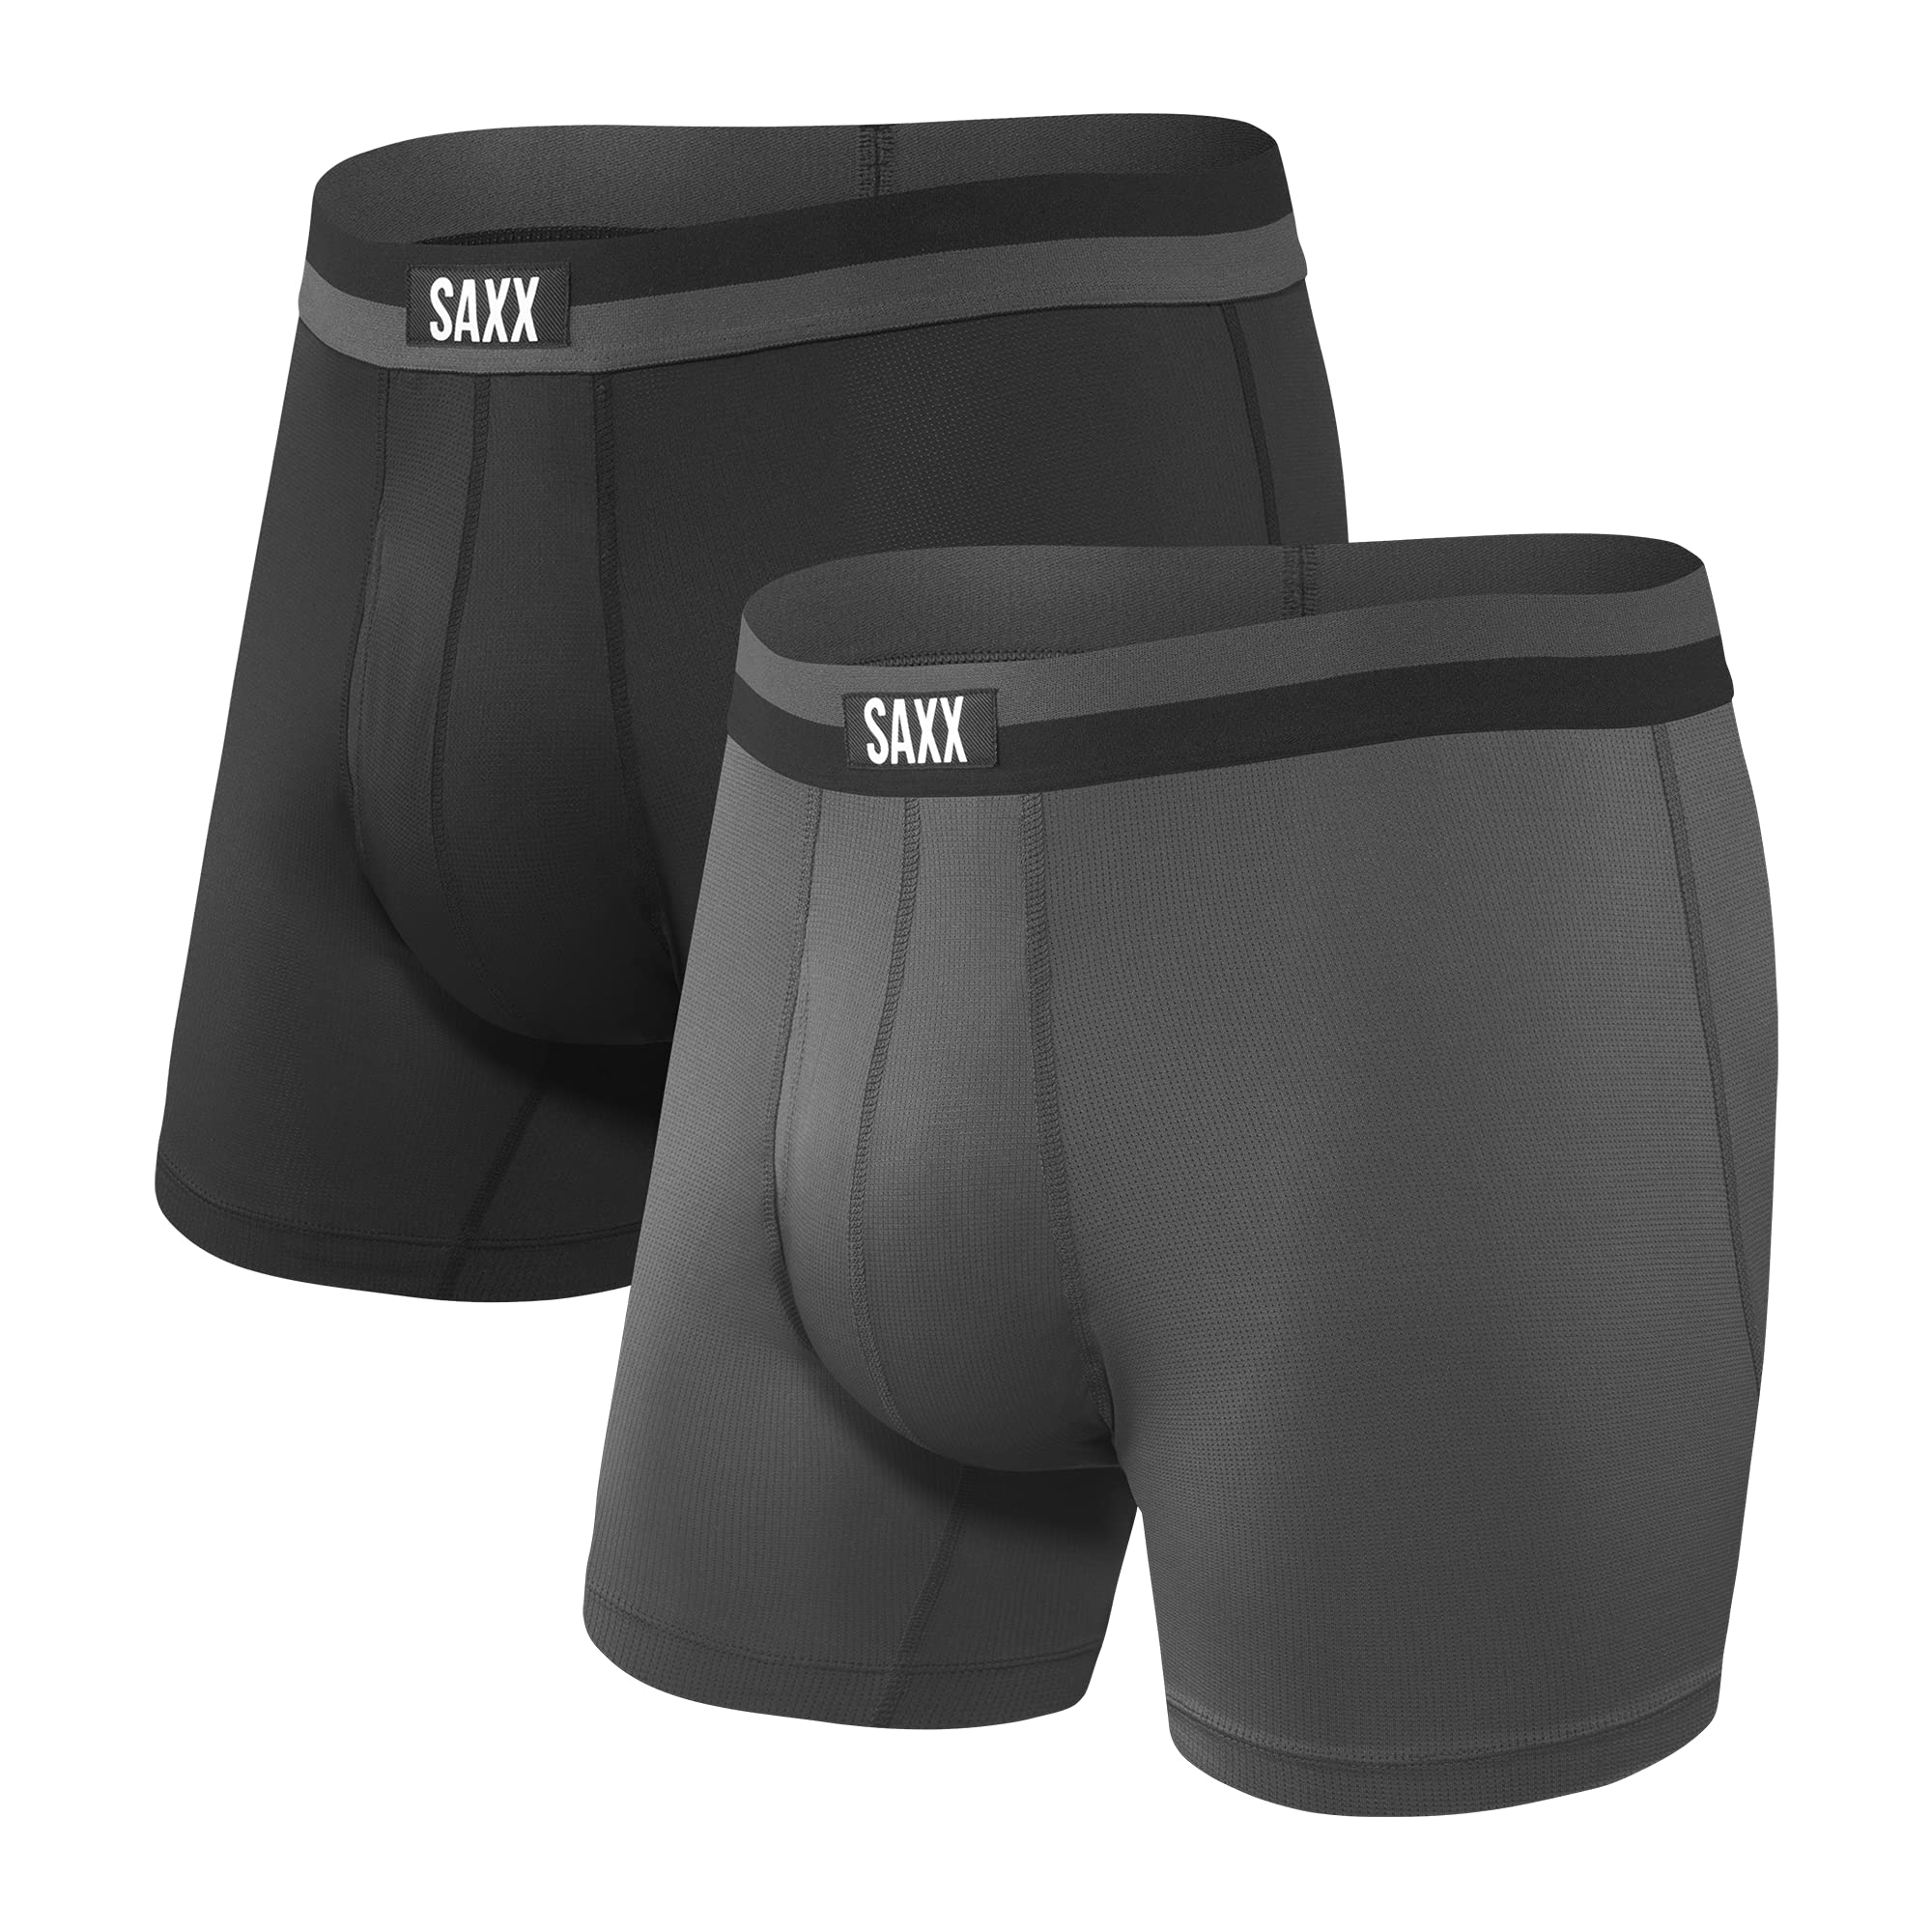 SAXX Men's Underwear - Sport Mesh Boxer Brief Fly 2Pk with Built-in Pouch Support - Underwear for Men